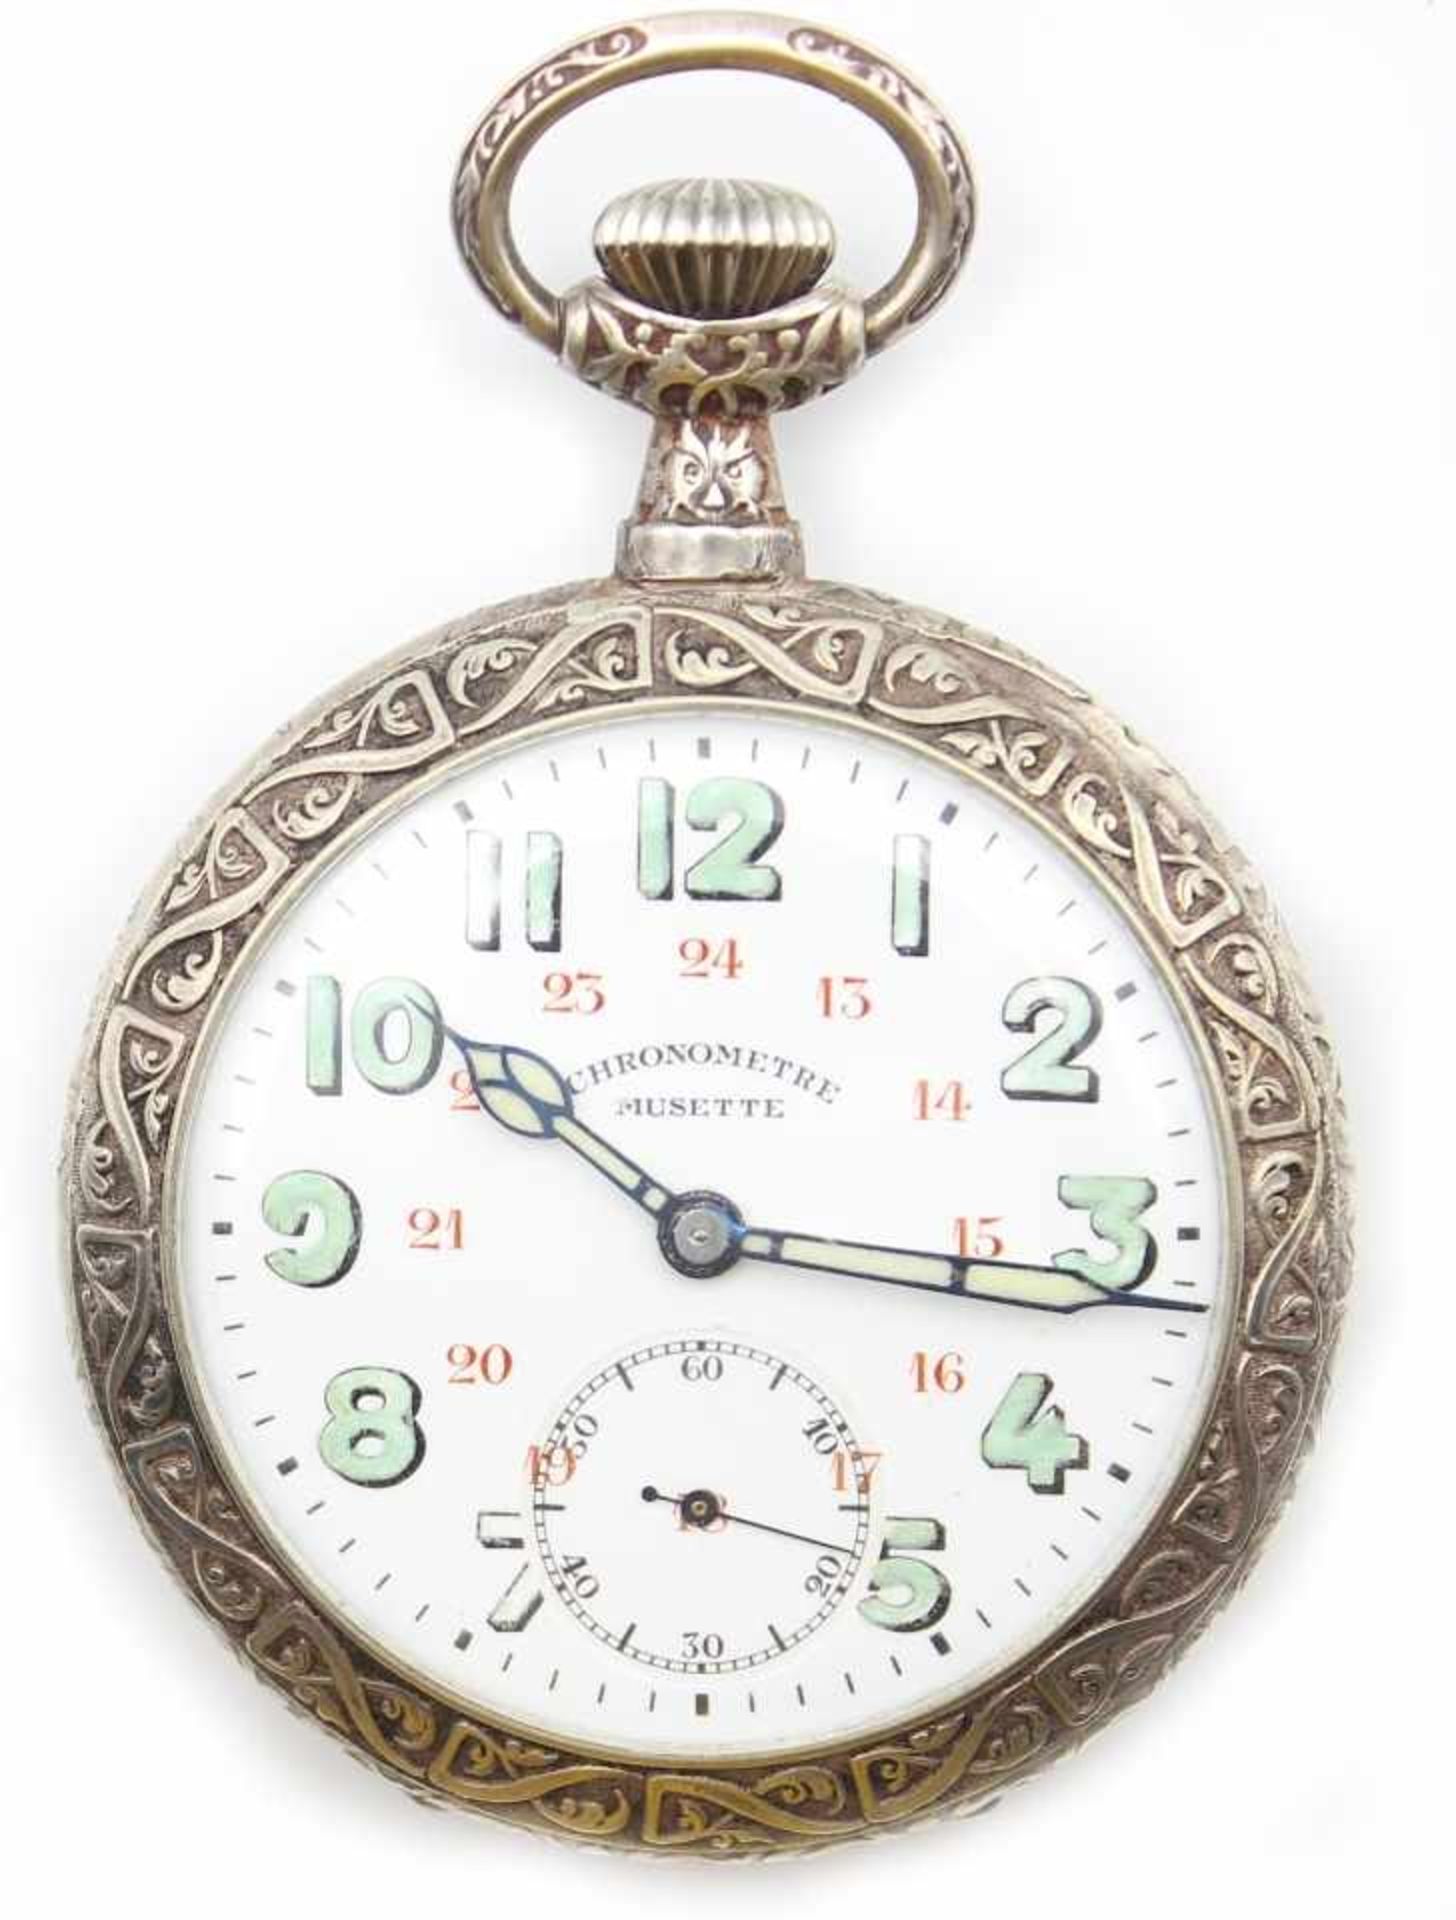 Offene silberne Herrentaschenuhr - Marke Chronometre Musette Emailzifferblatt mit arabischen